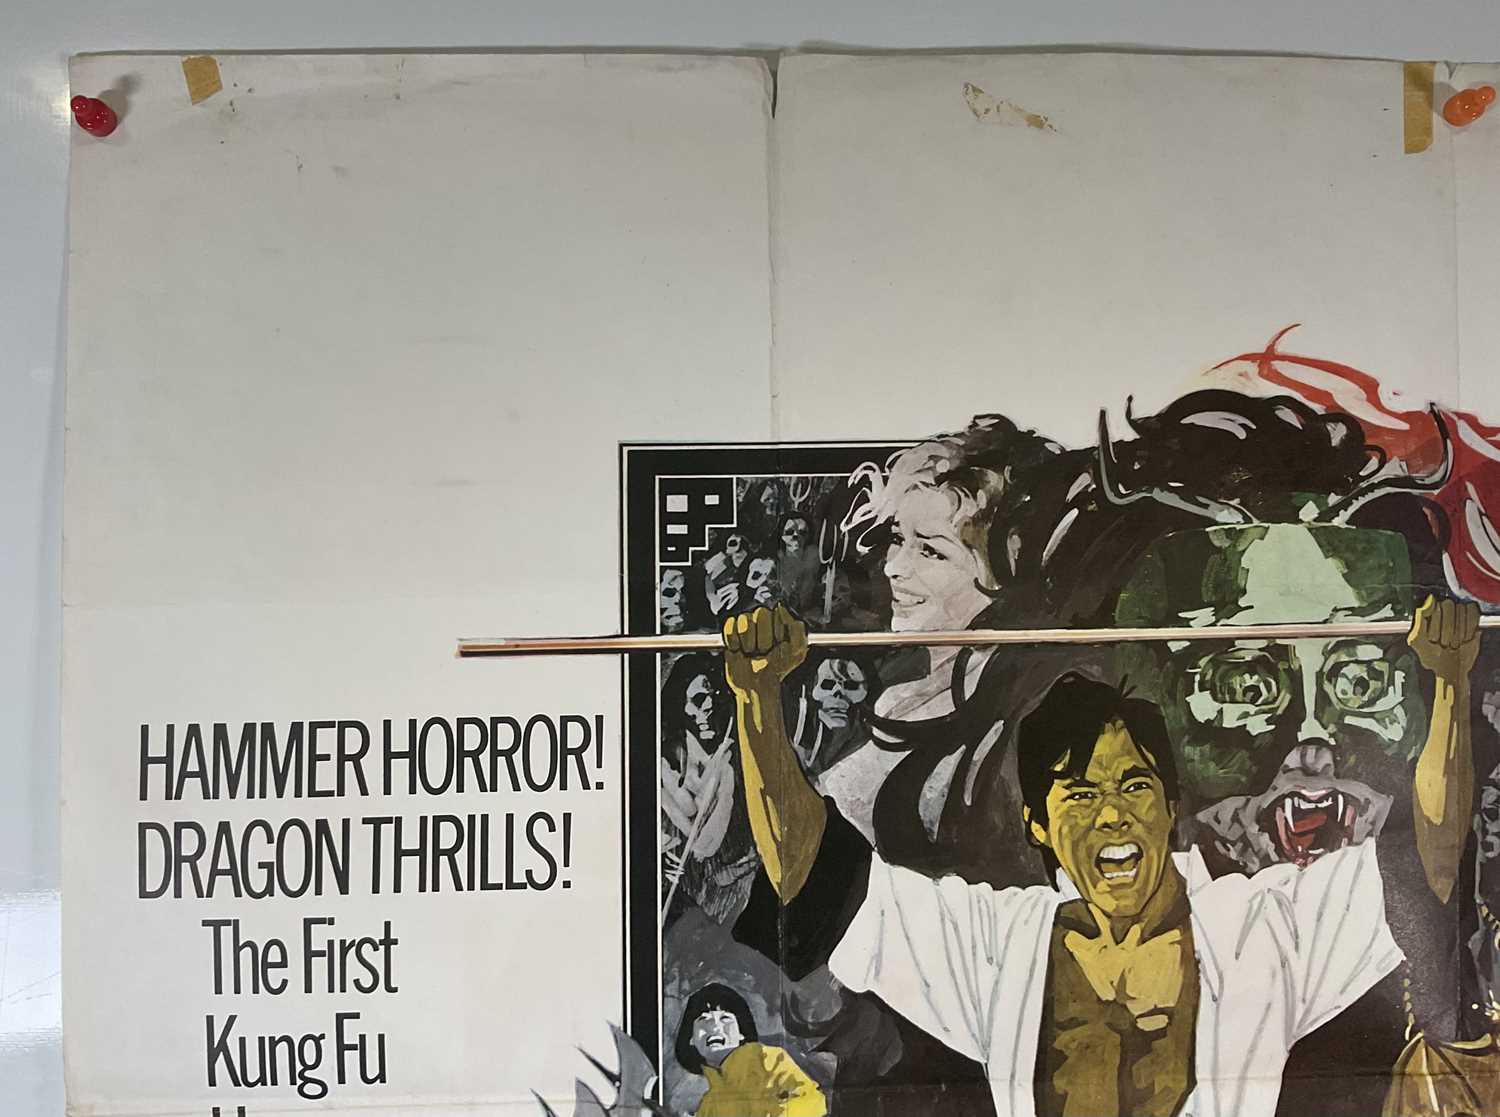 LEGEND OF THE 7 GOLDEN VAMPIRES (1974) UK Quad film poster, Hammer Horror starring Peter Cushing, - Image 2 of 6